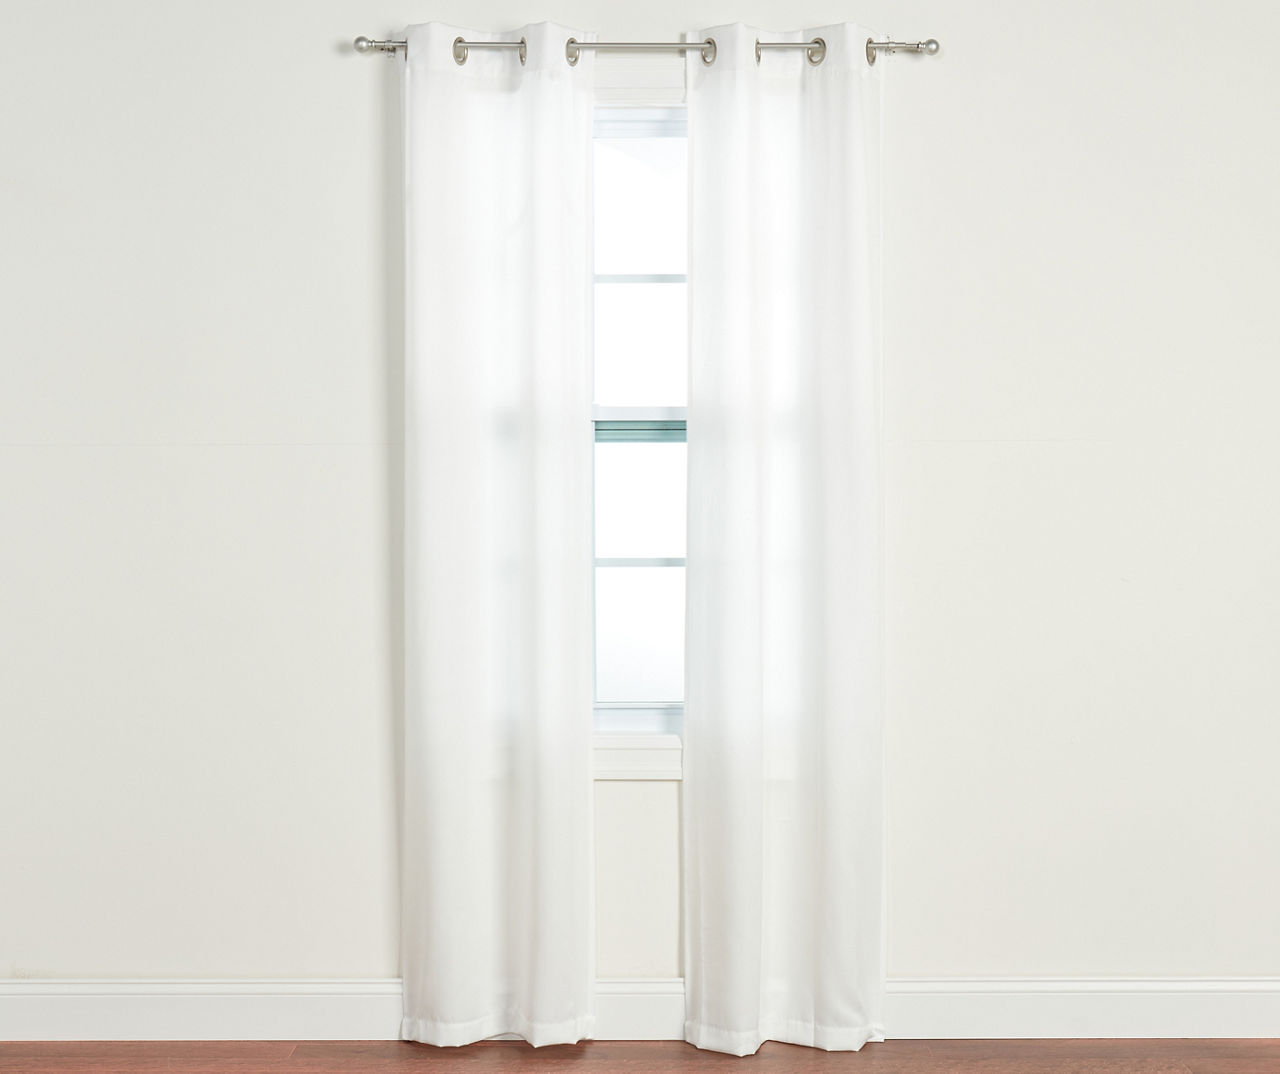 4-Piece Putnam White Room-Darkening Curtain Panels Set, (84")